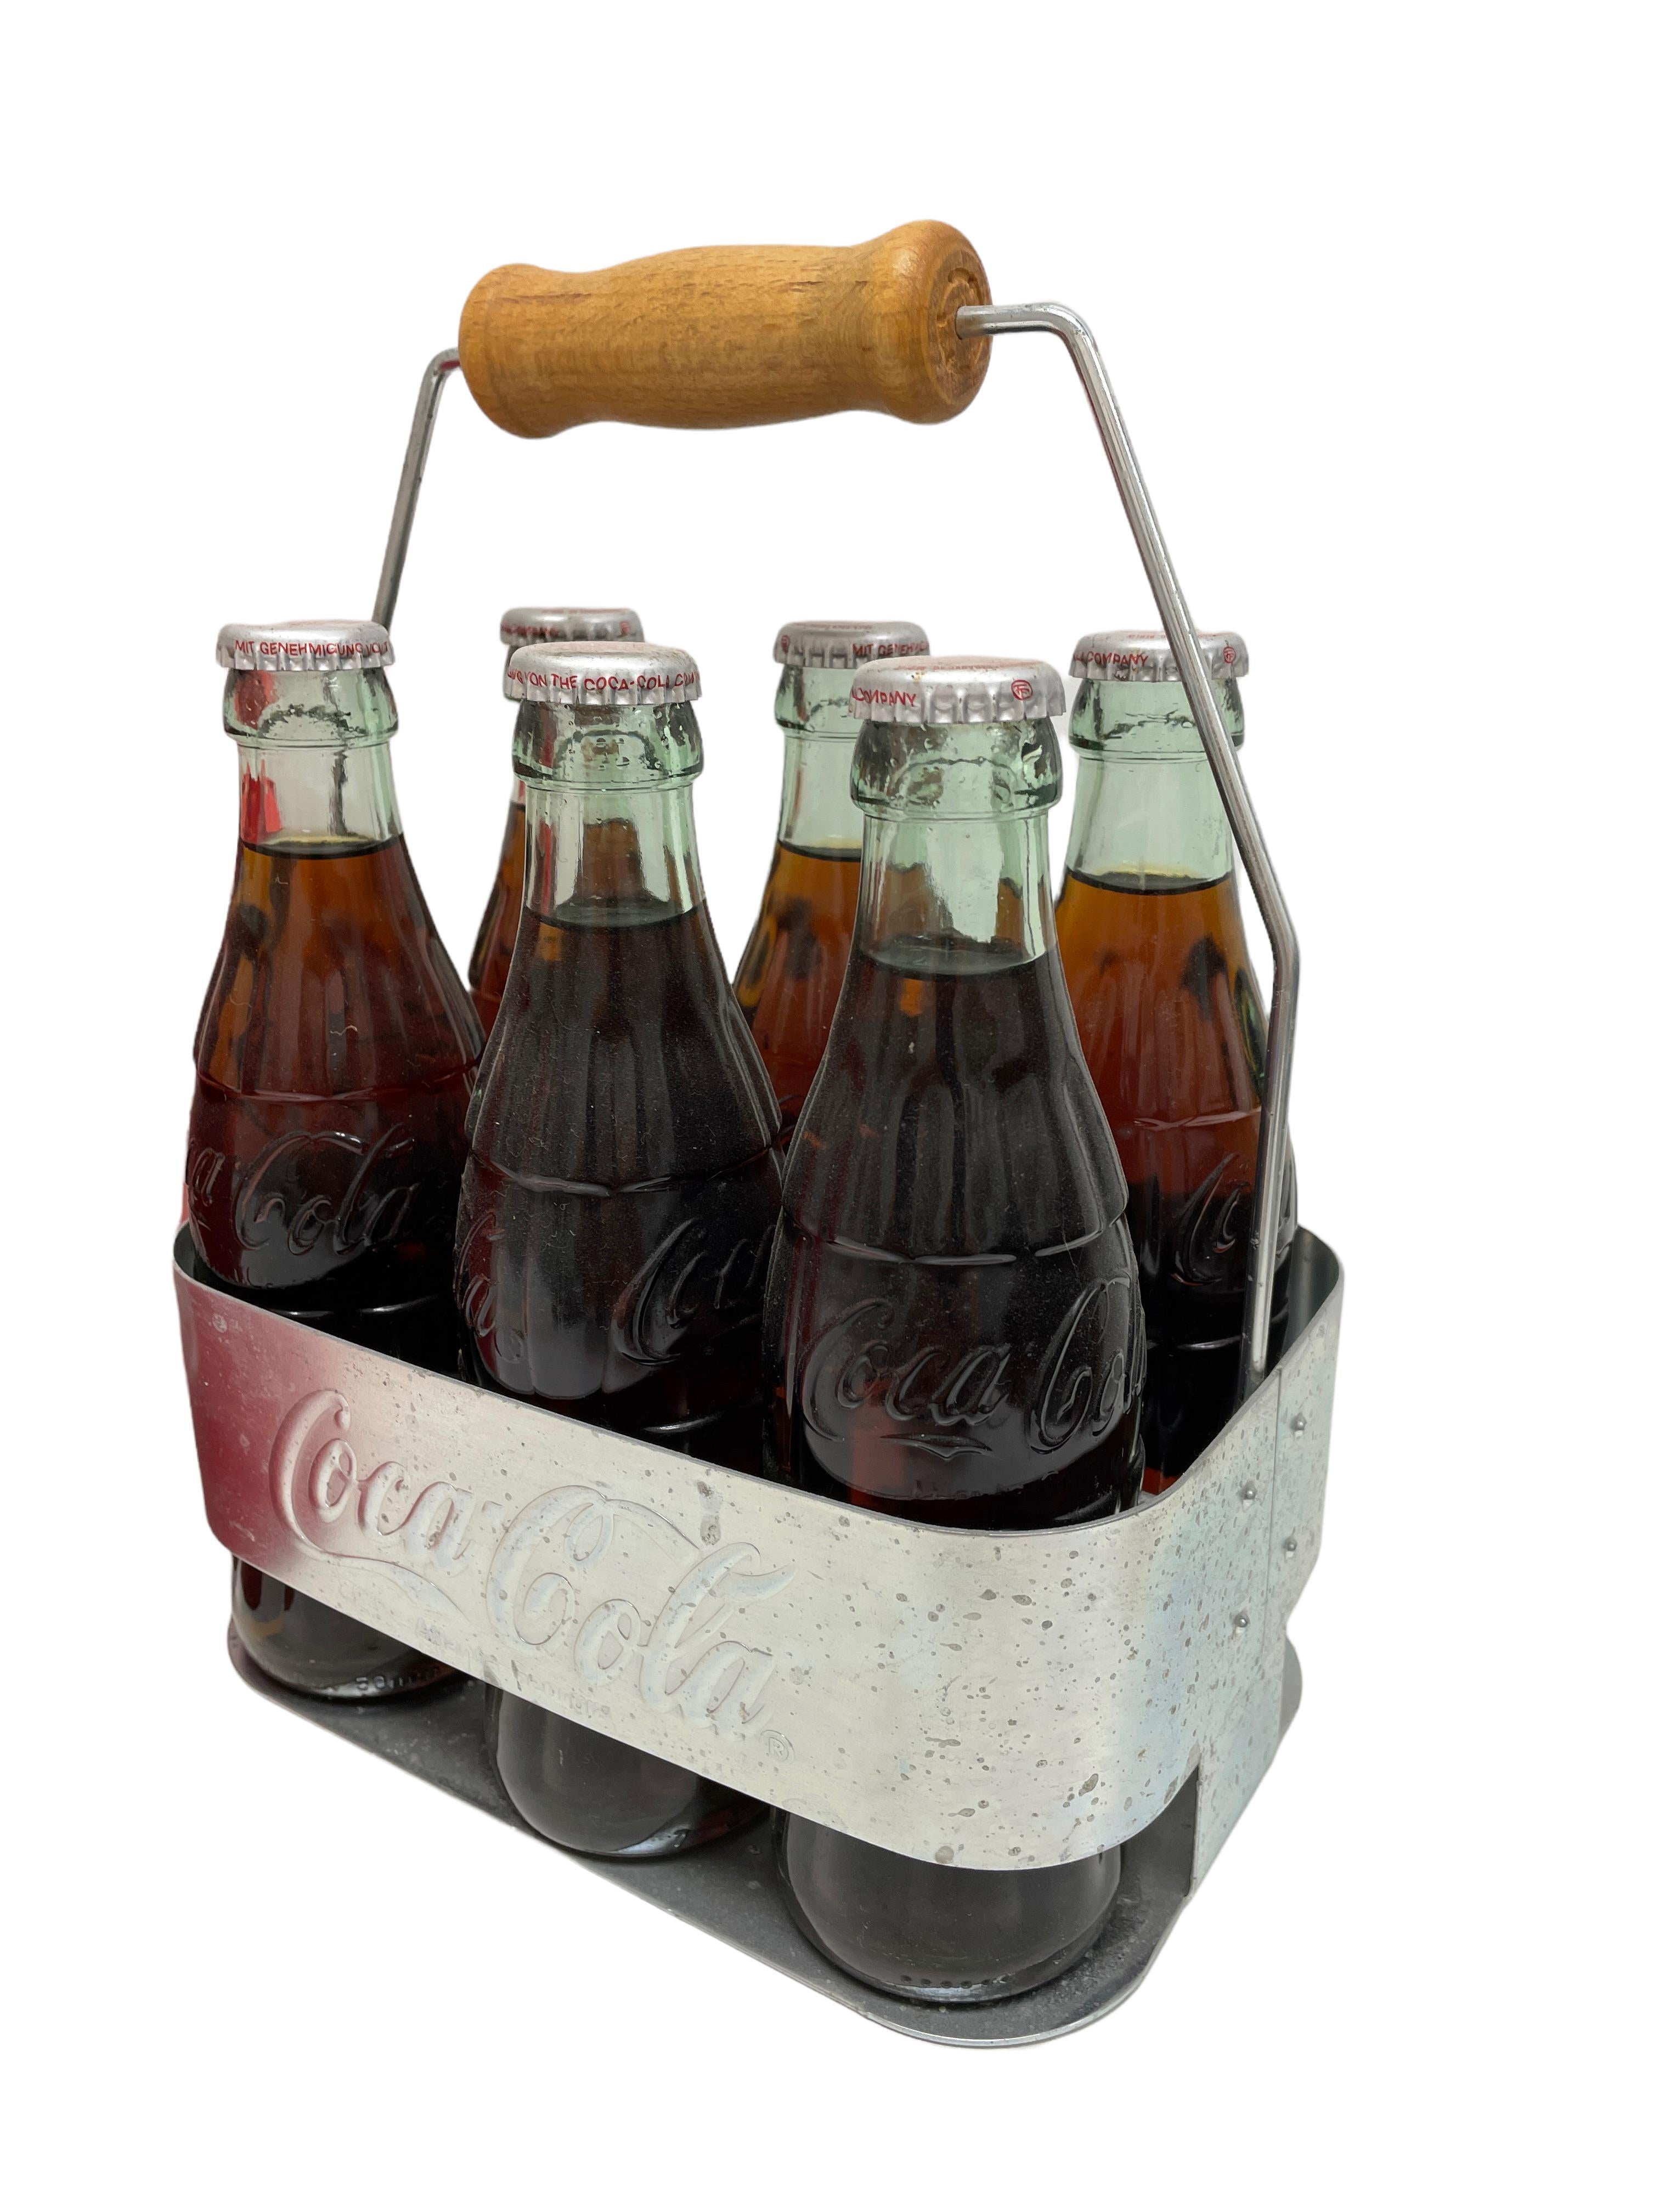 Modern 1960s German Vintage Advertising Metal Coca-Cola Stadium Cooler & Bottle Carrier For Sale